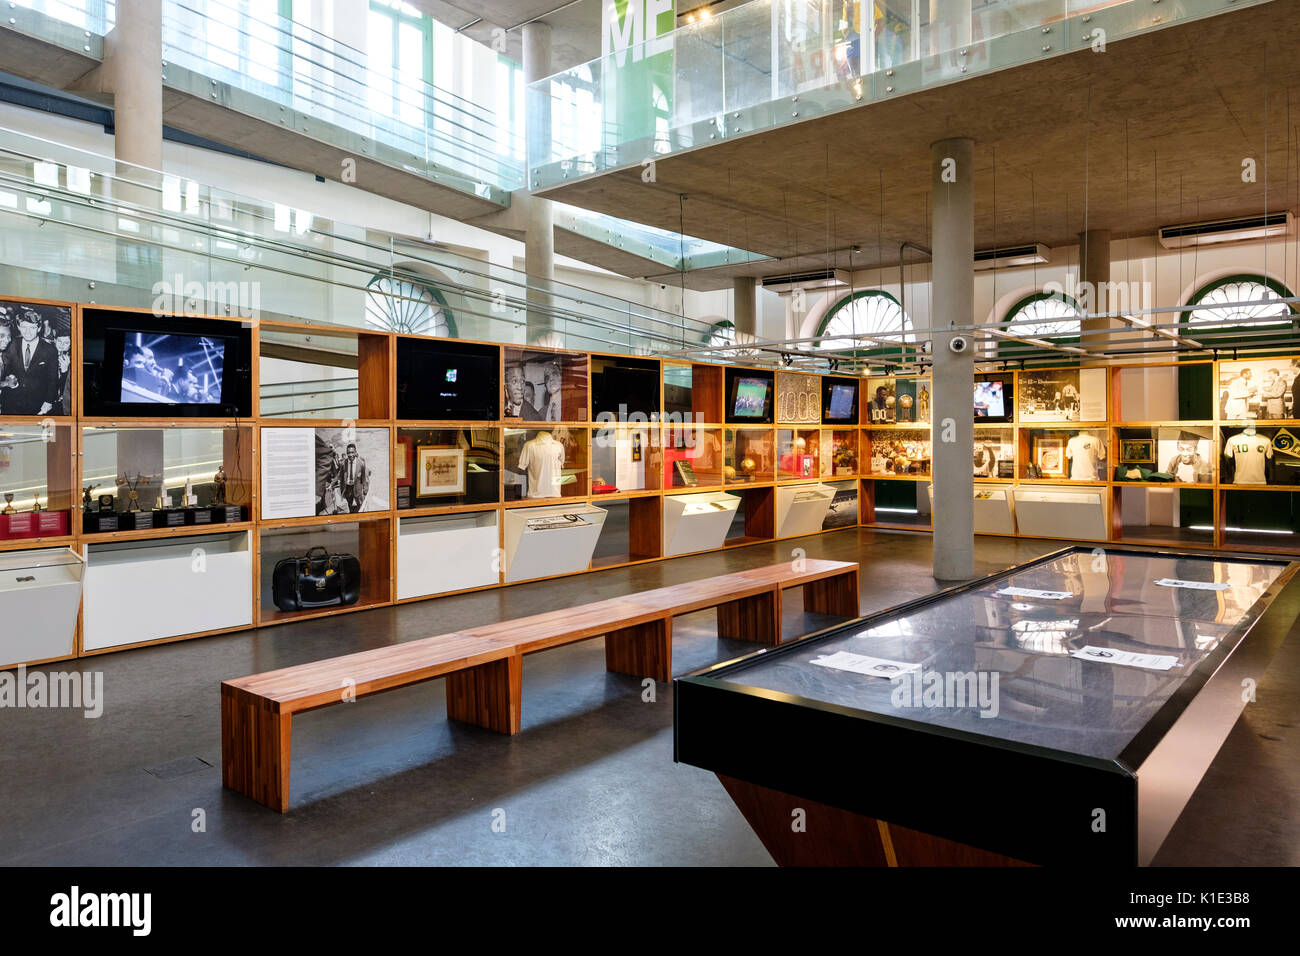 Piano terra visualizza della Pele Museum (Museu Pelé), dedicato al brasiliano della leggenda del calcio Edson Arantes do Nascimento, SANTOS, Brasile. Foto Stock